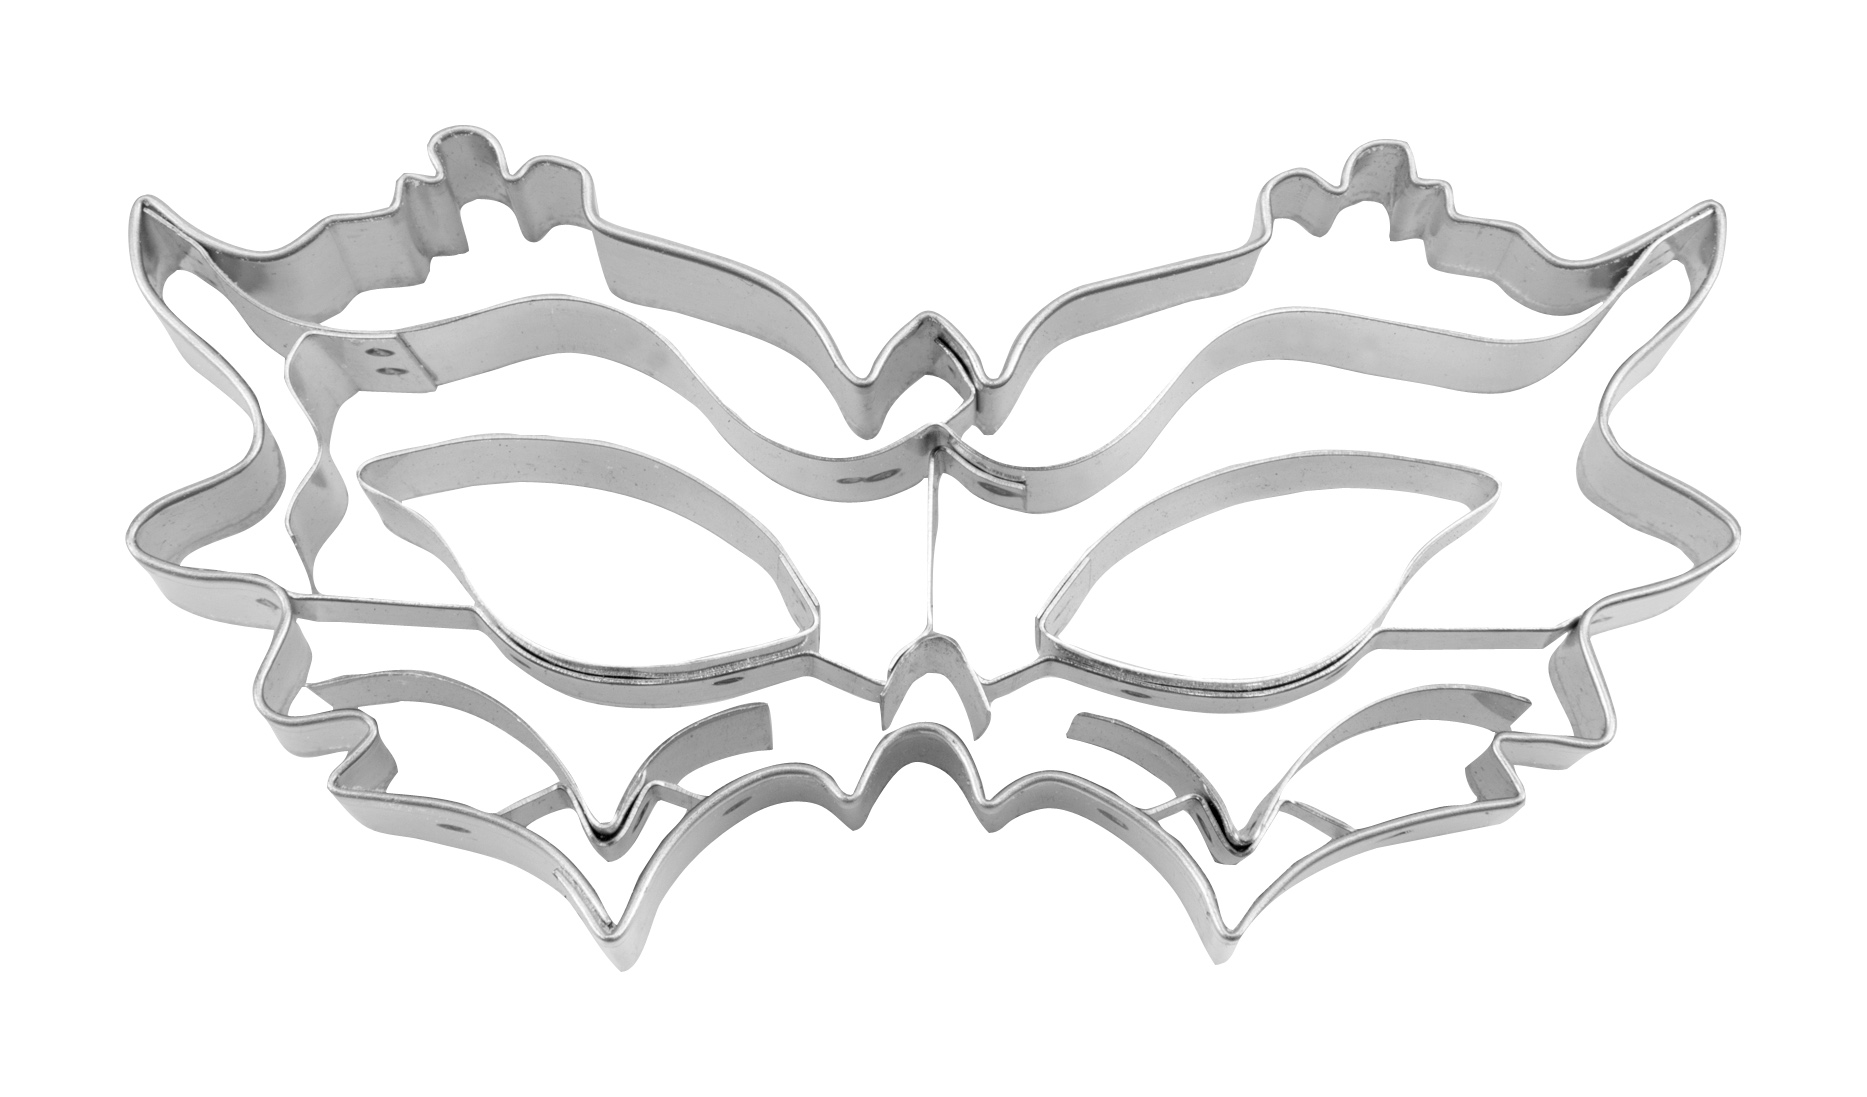 Tagliabiscotti maschera di carnevale acciaio inossidabile 10,5 cm